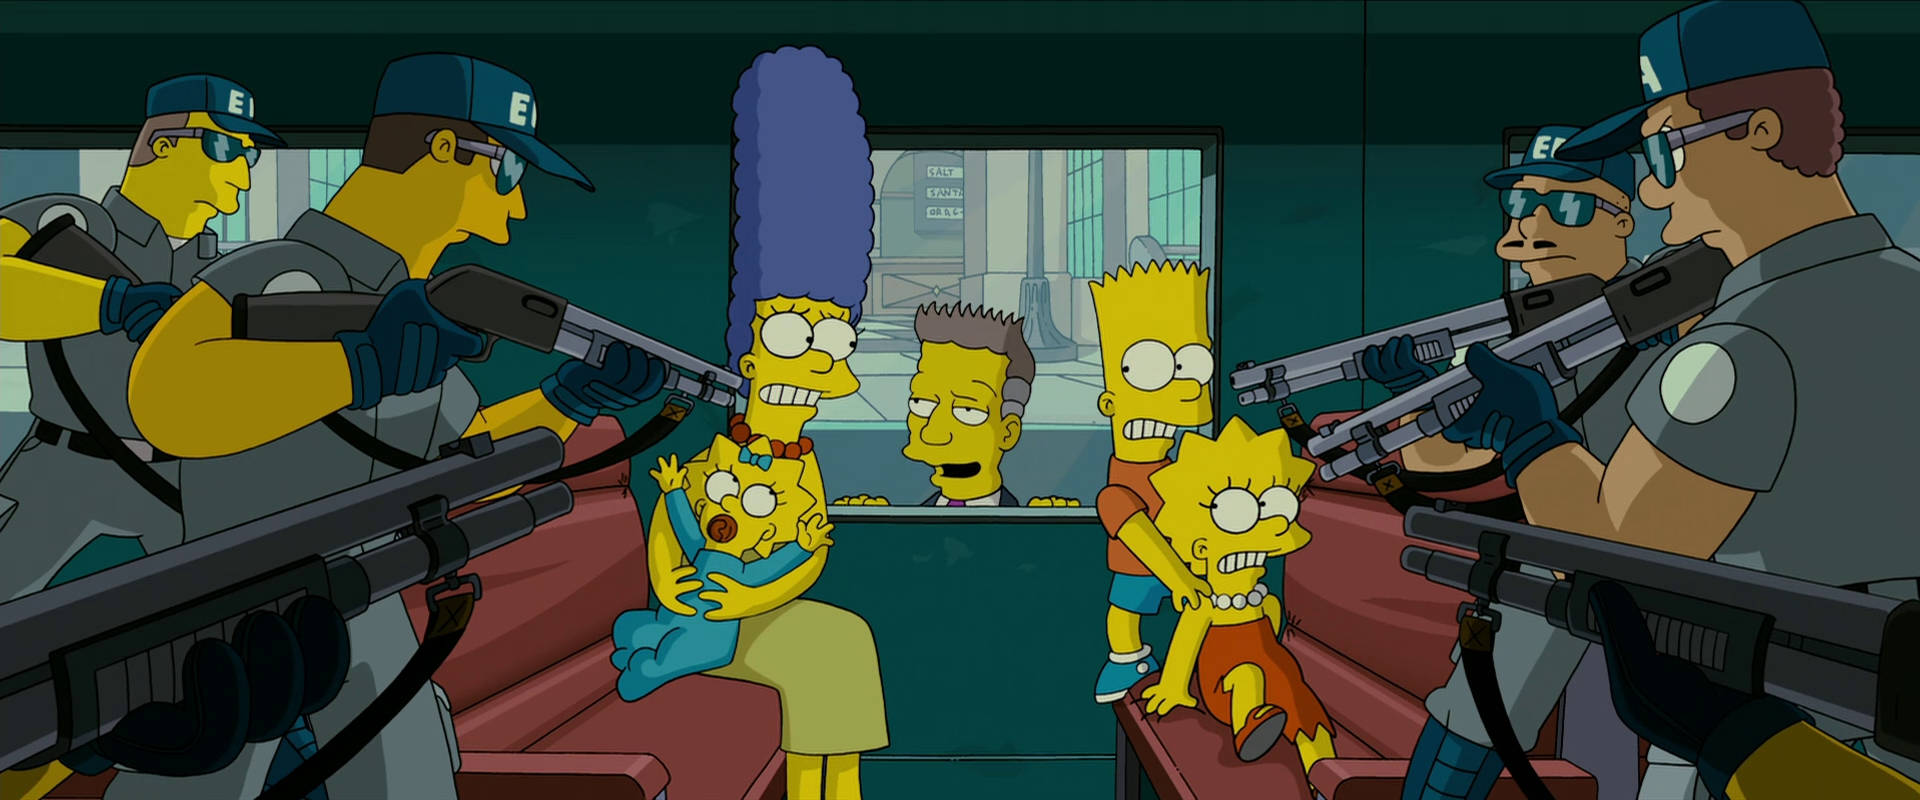 Famíliapresa Do Filme Os Simpsons. Papel de Parede